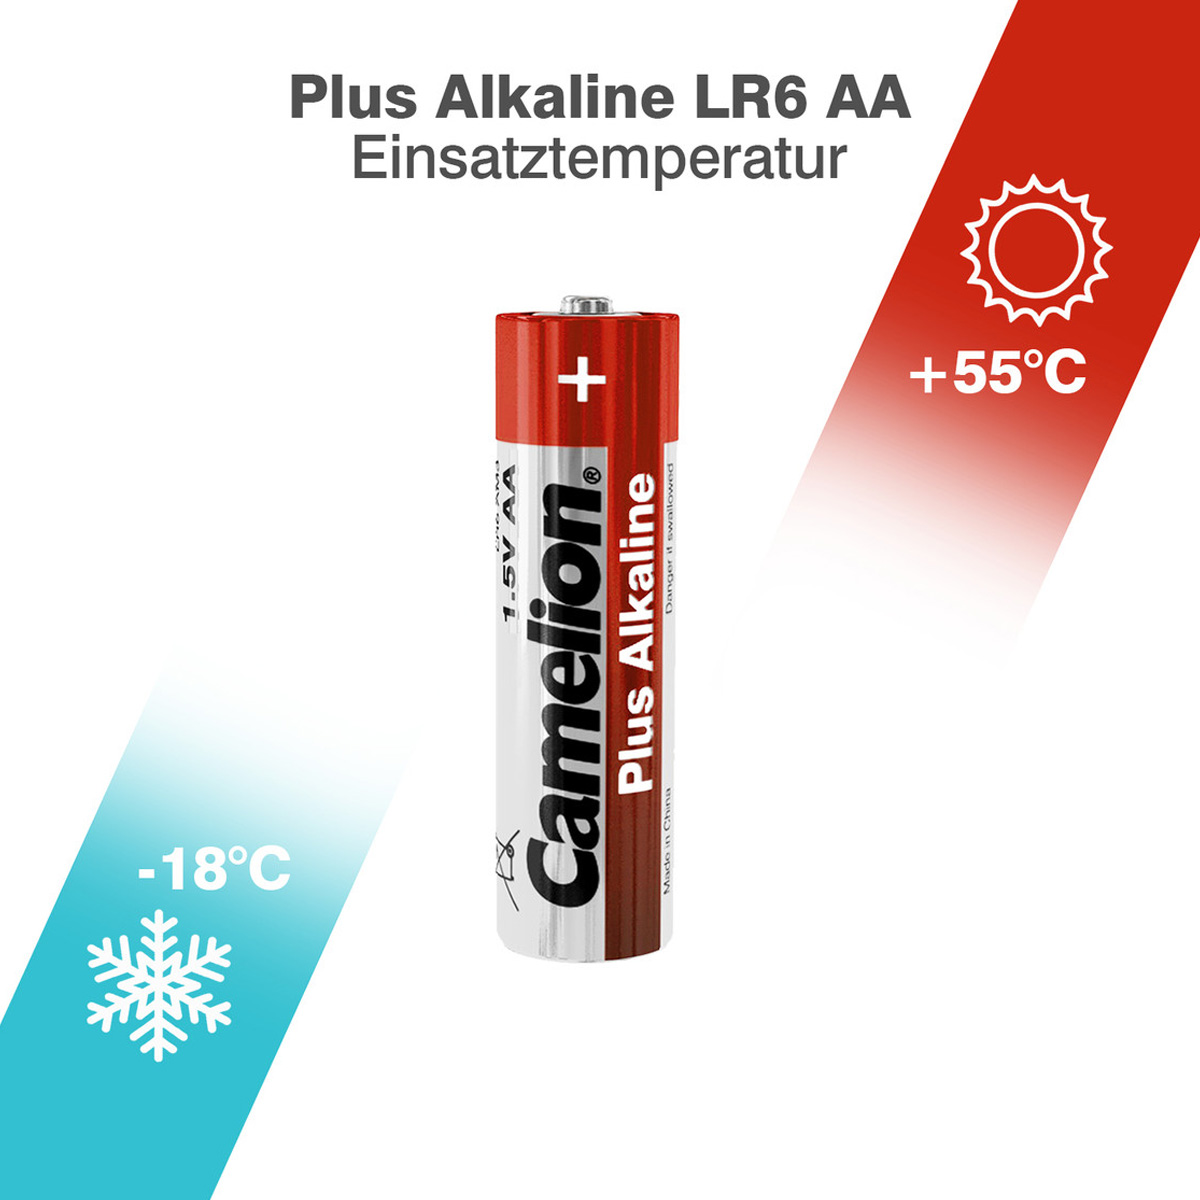 Batterie Mignon AA LR6 1,5V PLUS Alkaline - Leistung auf Dauer - 3 Stück